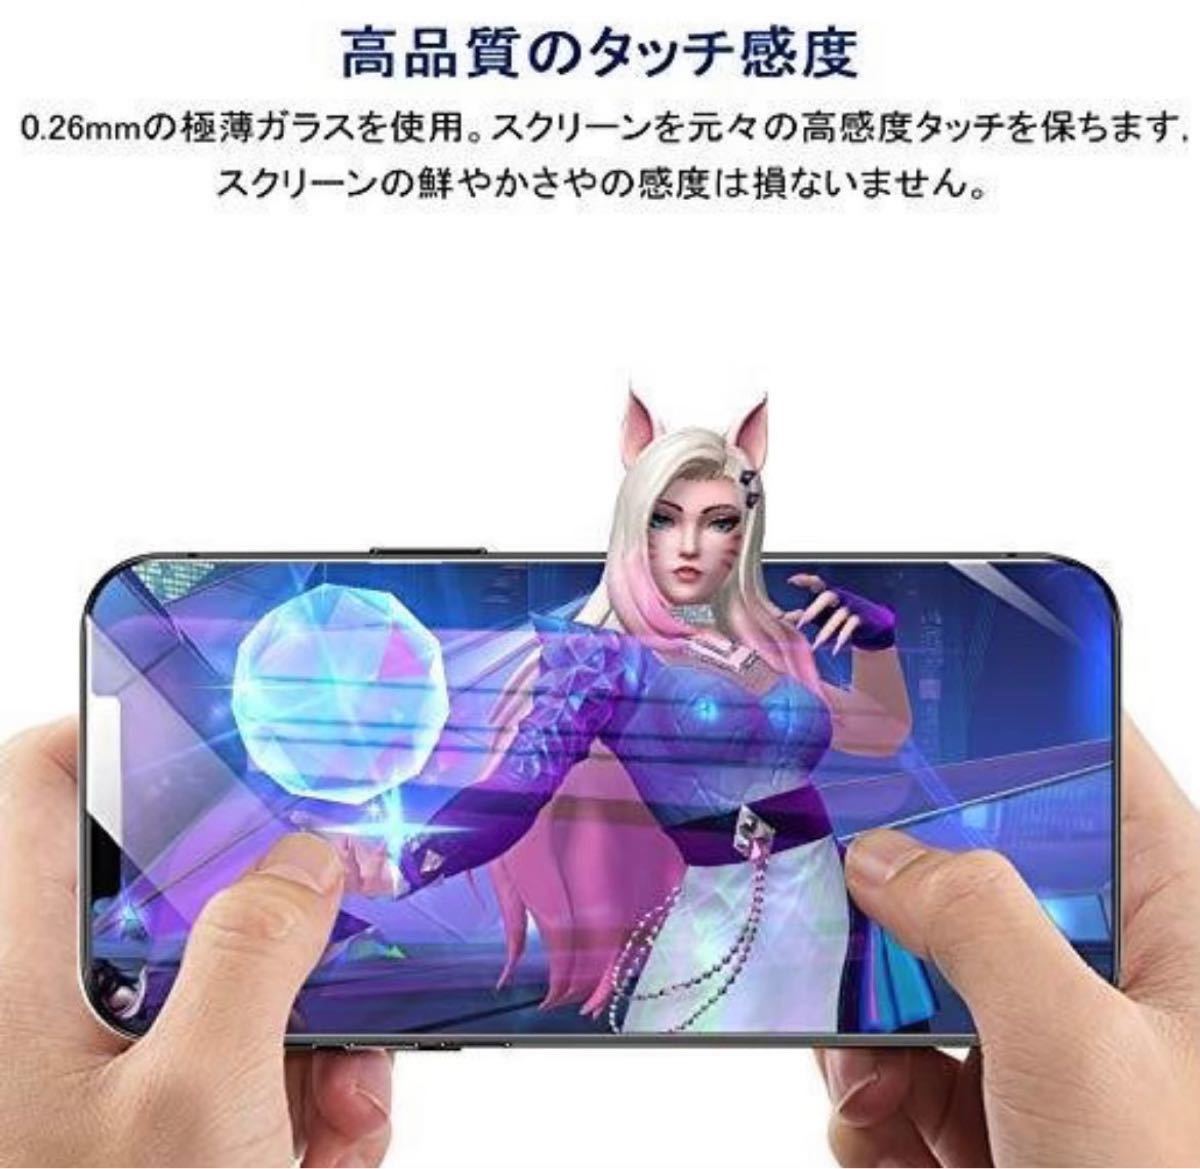 即購入OK！【iPhone7Plus.8Plus専用】ブルーライトカットガラスフィルム